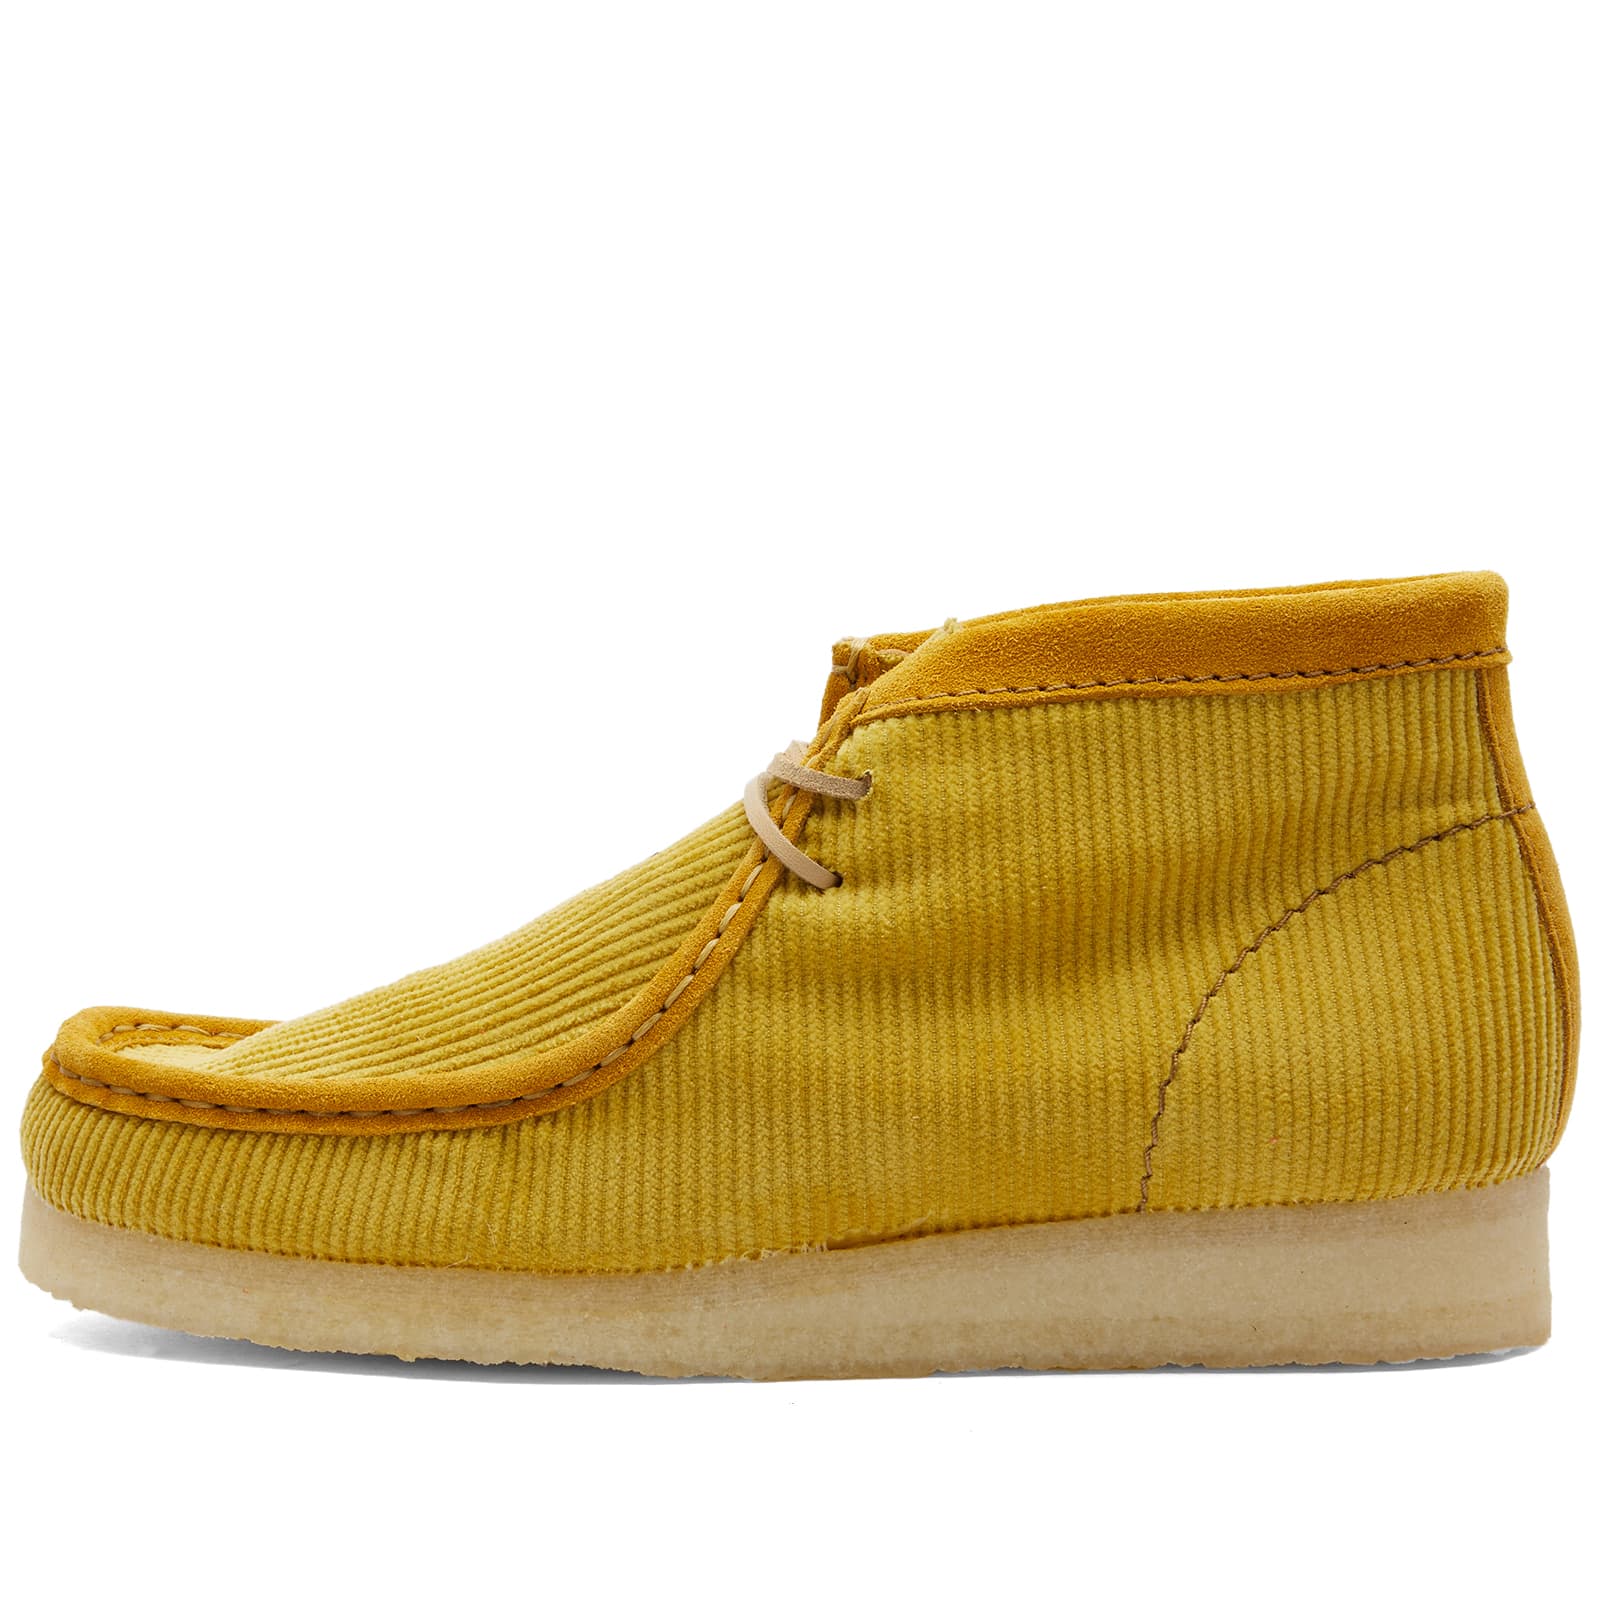 Ботинки Clarks Originals Mayde Wallabee, желтый ботинки clarks originals mayde wallabee кораловый